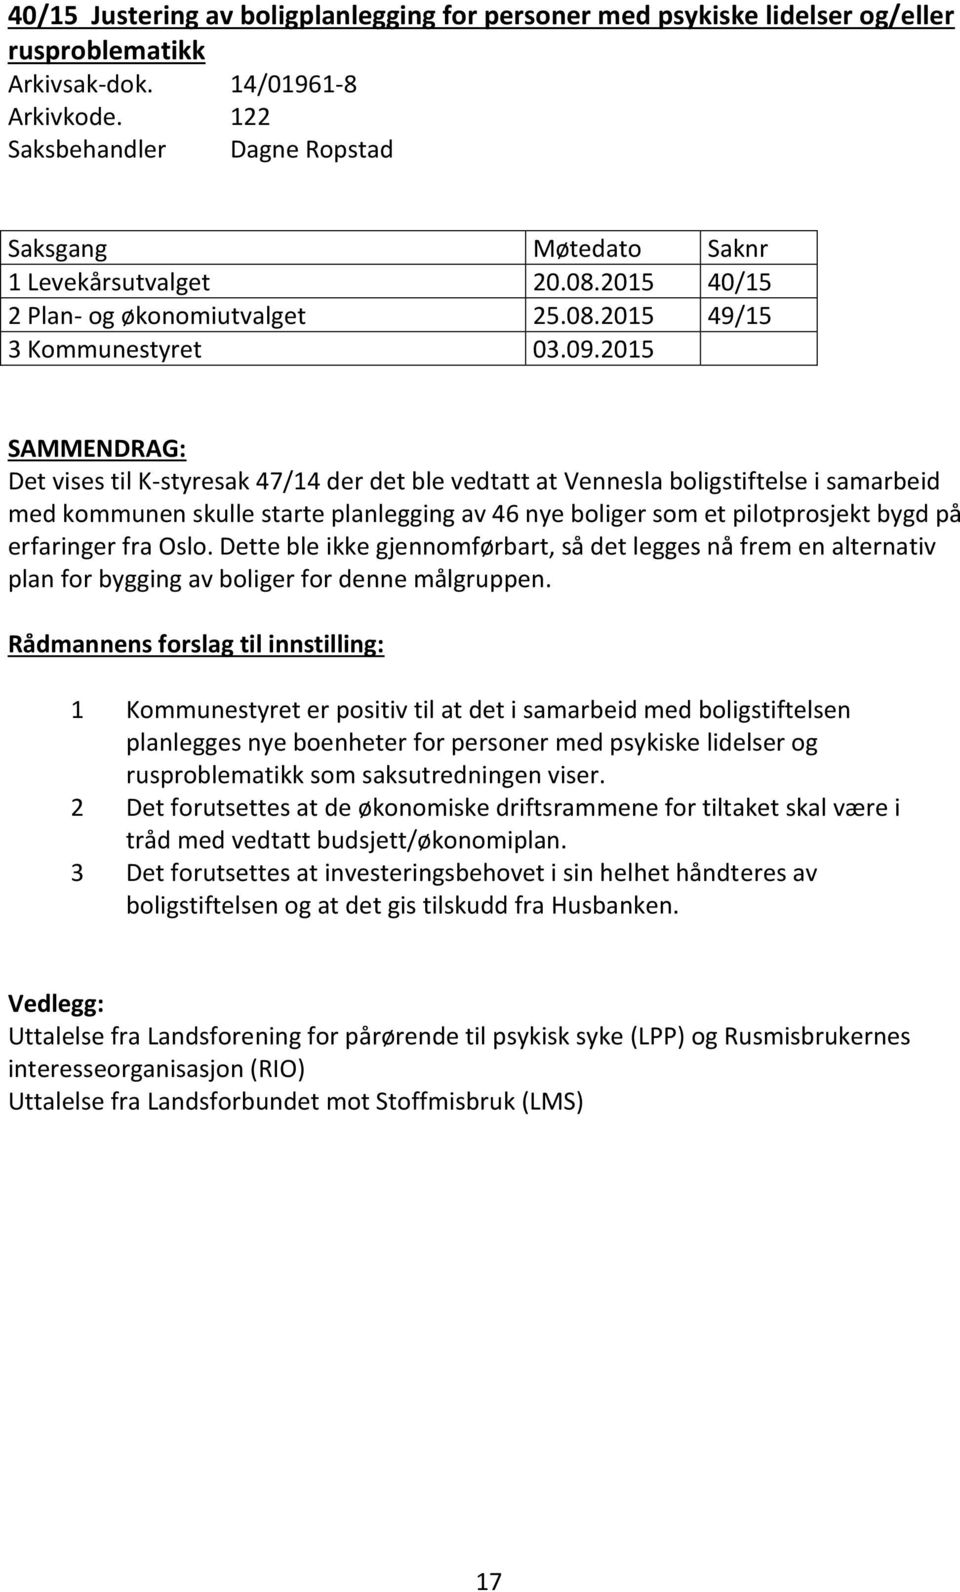 2015 SAMMENDRAG: Det vises til K-styresak 47/14 der det ble vedtatt at Vennesla boligstiftelse i samarbeid med kommunen skulle starte planlegging av 46 nye boliger som et pilotprosjekt bygd på